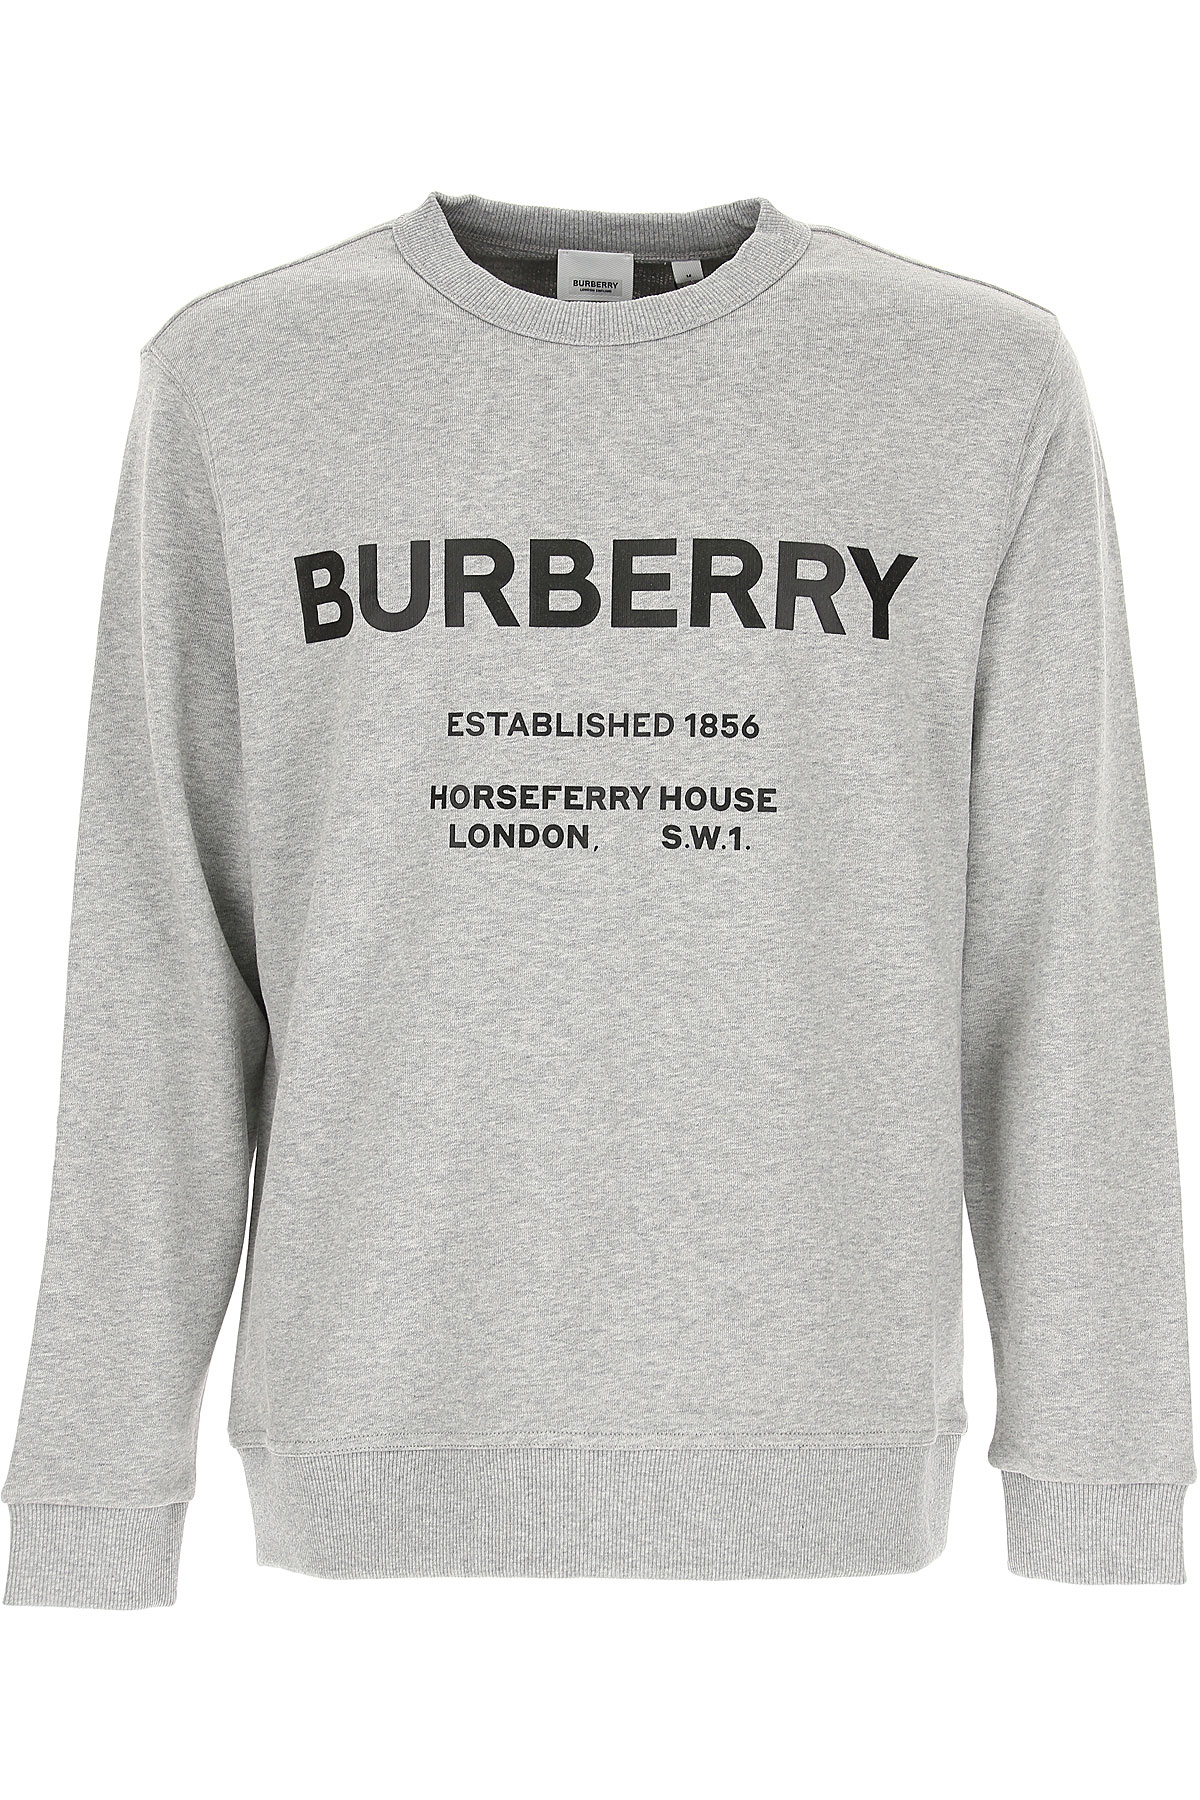 Burberry Sweatshirt für Herren, Kapuzenpulli, Hoodie, Sweats Günstig im Sale, Grau, Baumwolle, 2017, L M S XL